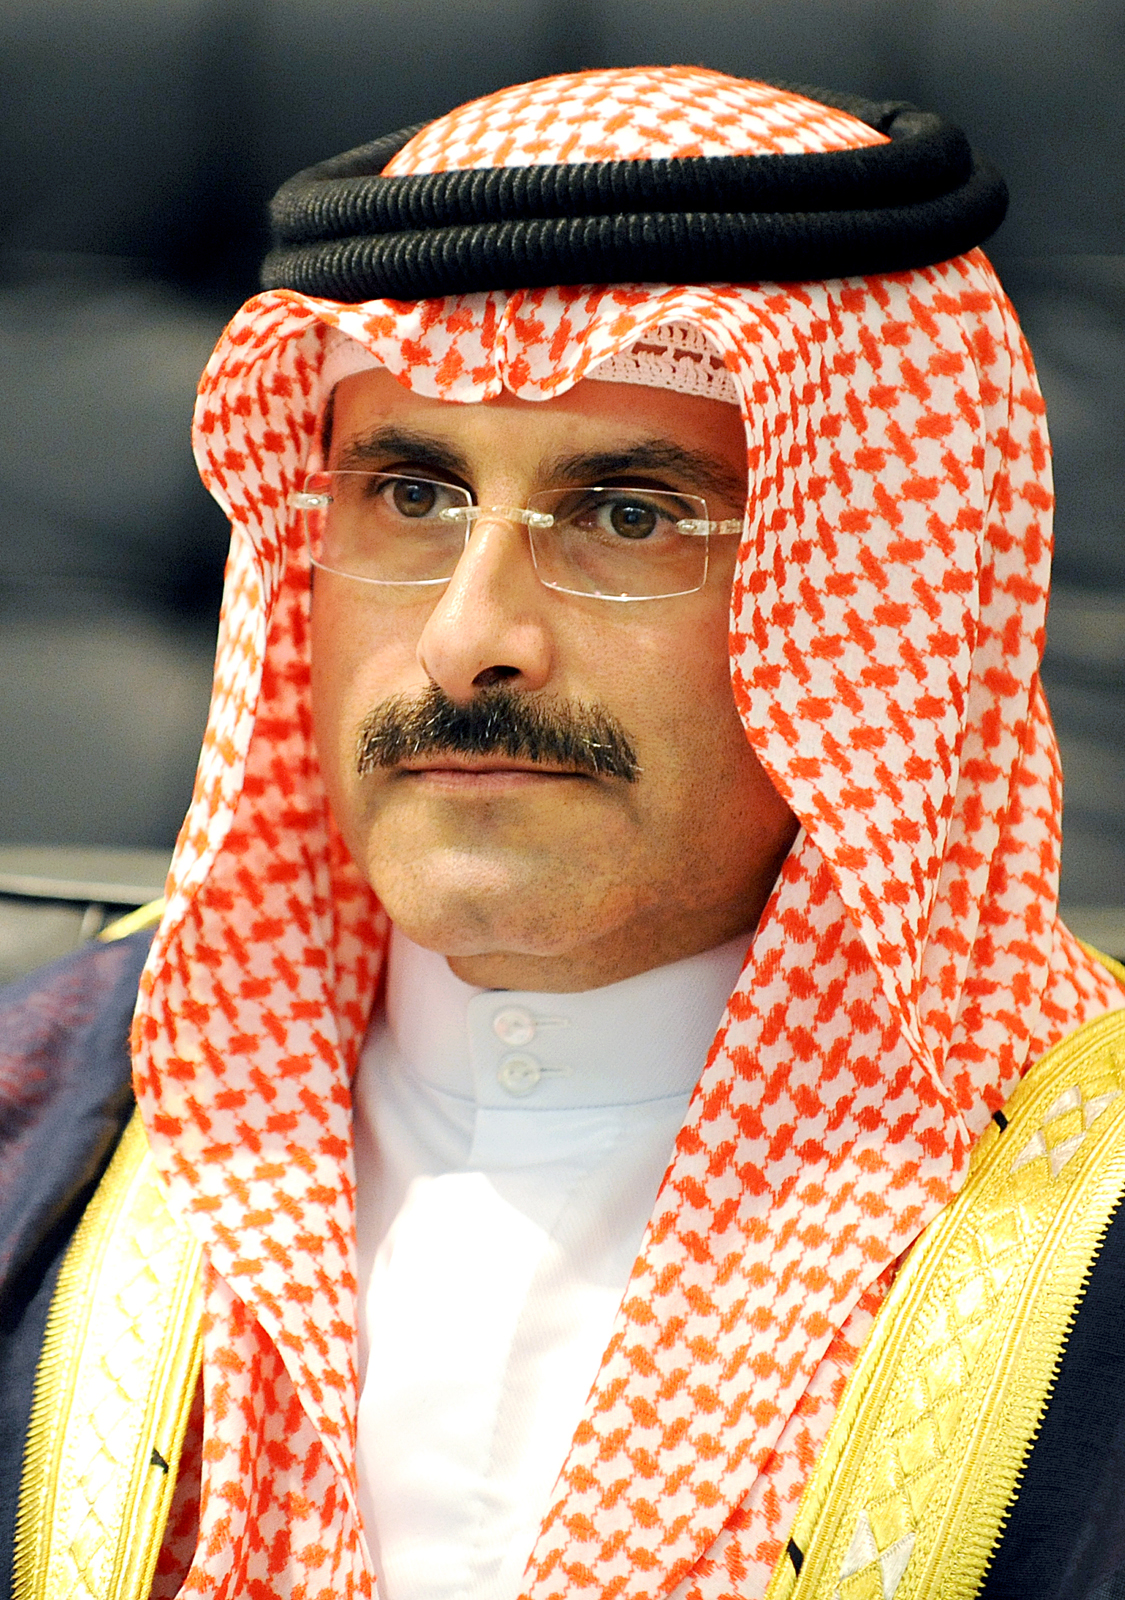 رئيس مجلس الإدارة المدير العام لوكالة الأنباء الكويتية (كونا) الشيخ مبارك دعيج الإبراهيم الصباح